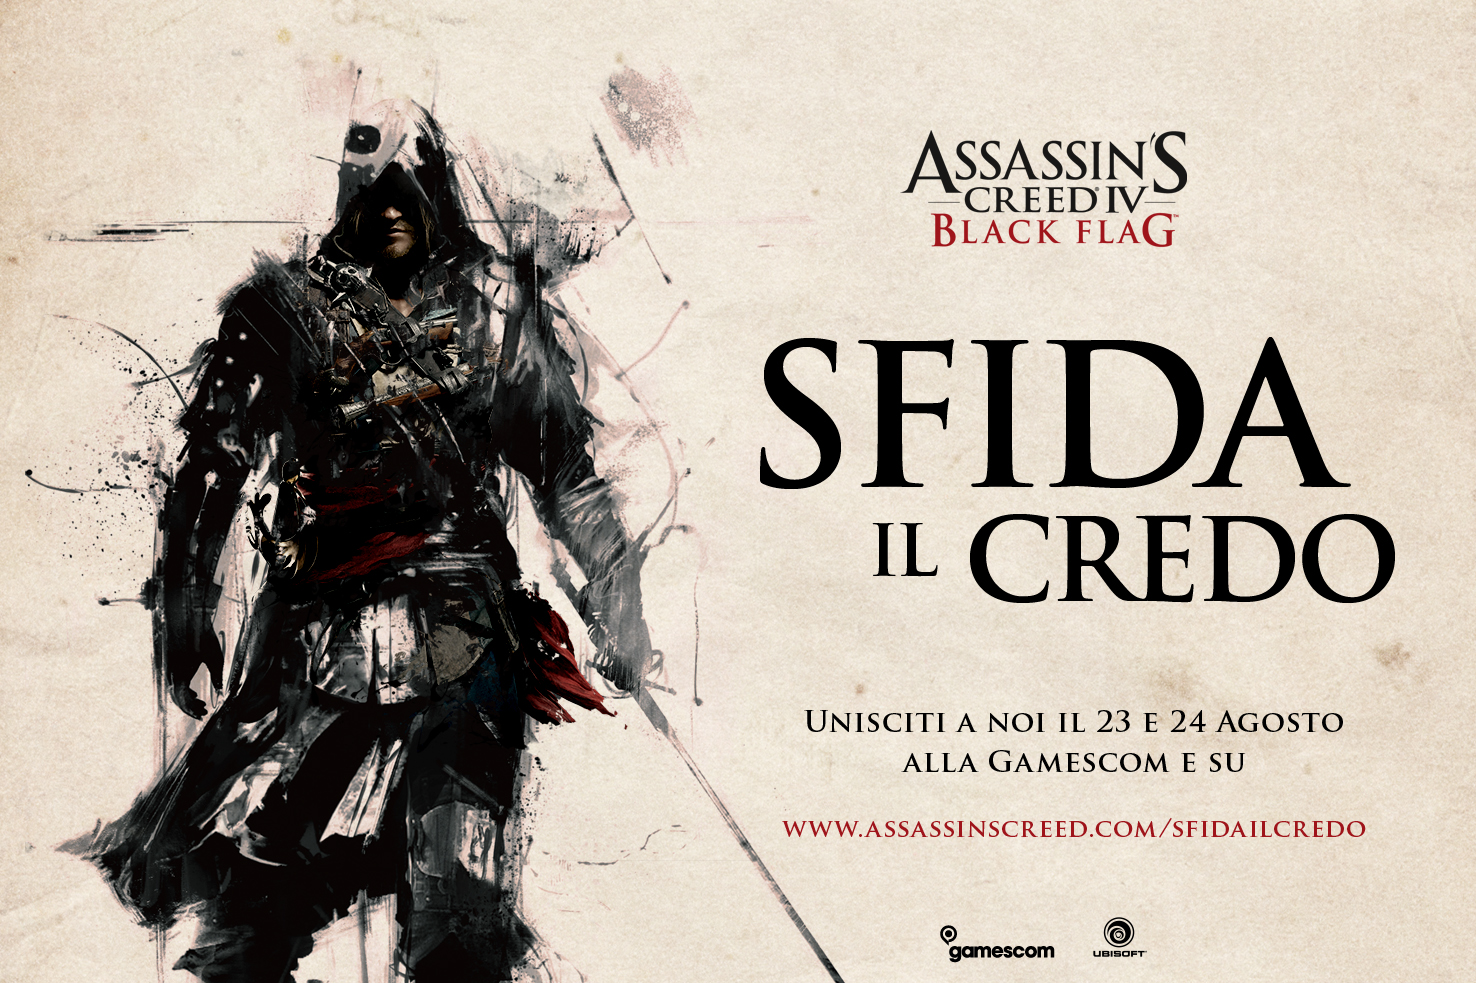 Ubisoft Annuncia I Dettagli Dell Evento Sfida Il Credo Alla Gamecom Dedicato Ad Assasin S Creed Iv Ilvideogioco Com